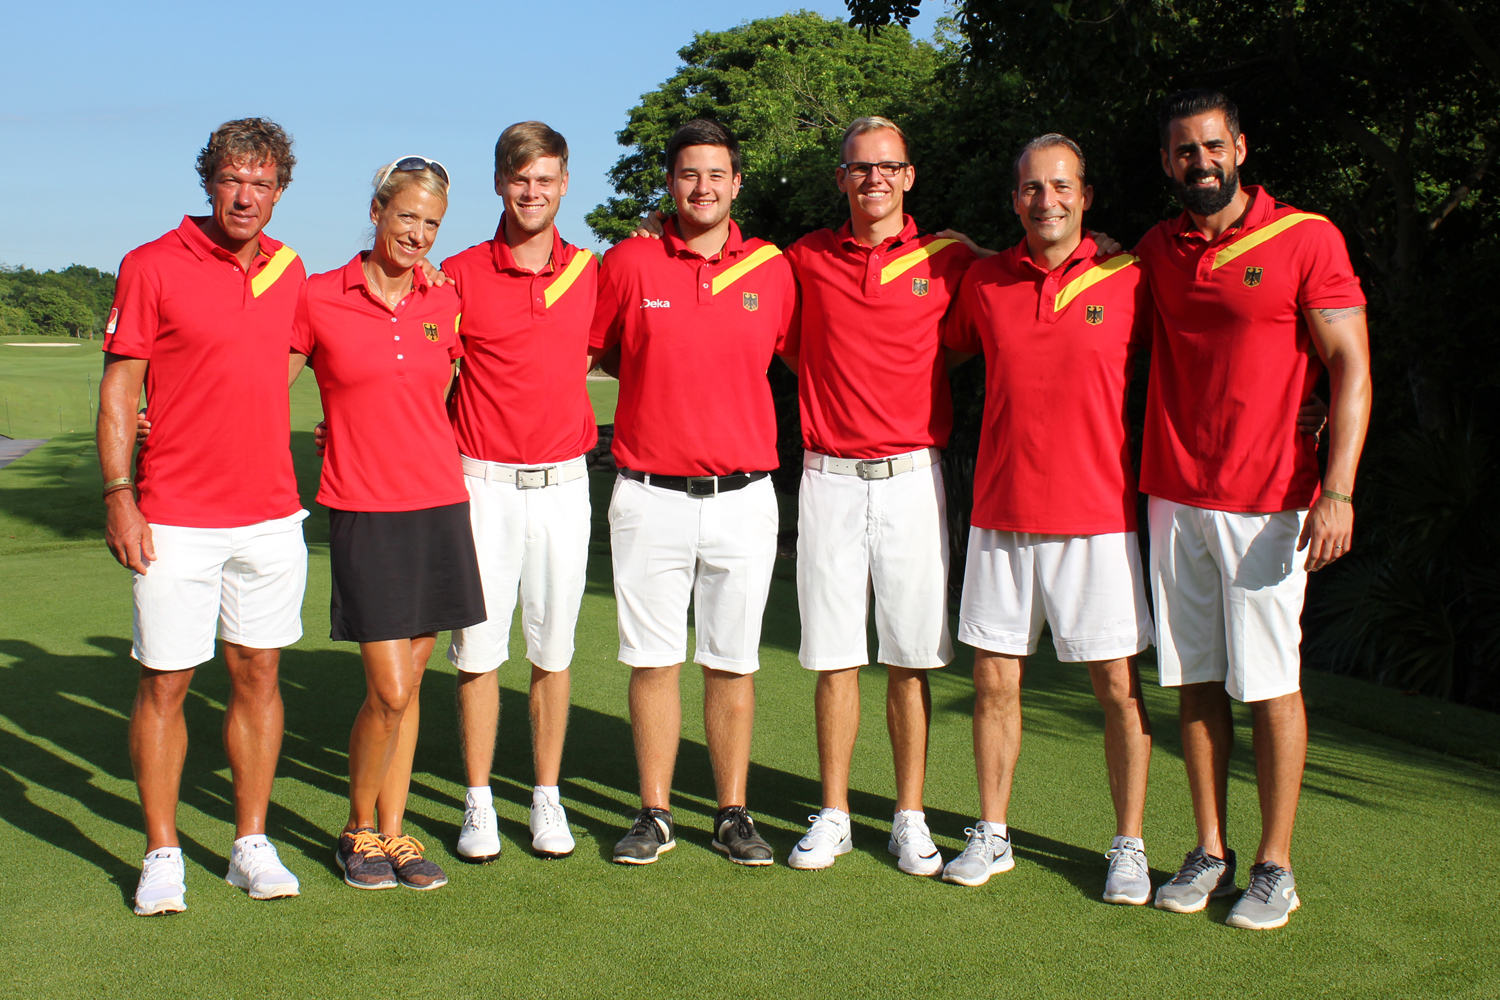 GTG-Herren mit Platz 12 bei Golf-Team-WM Presseportal